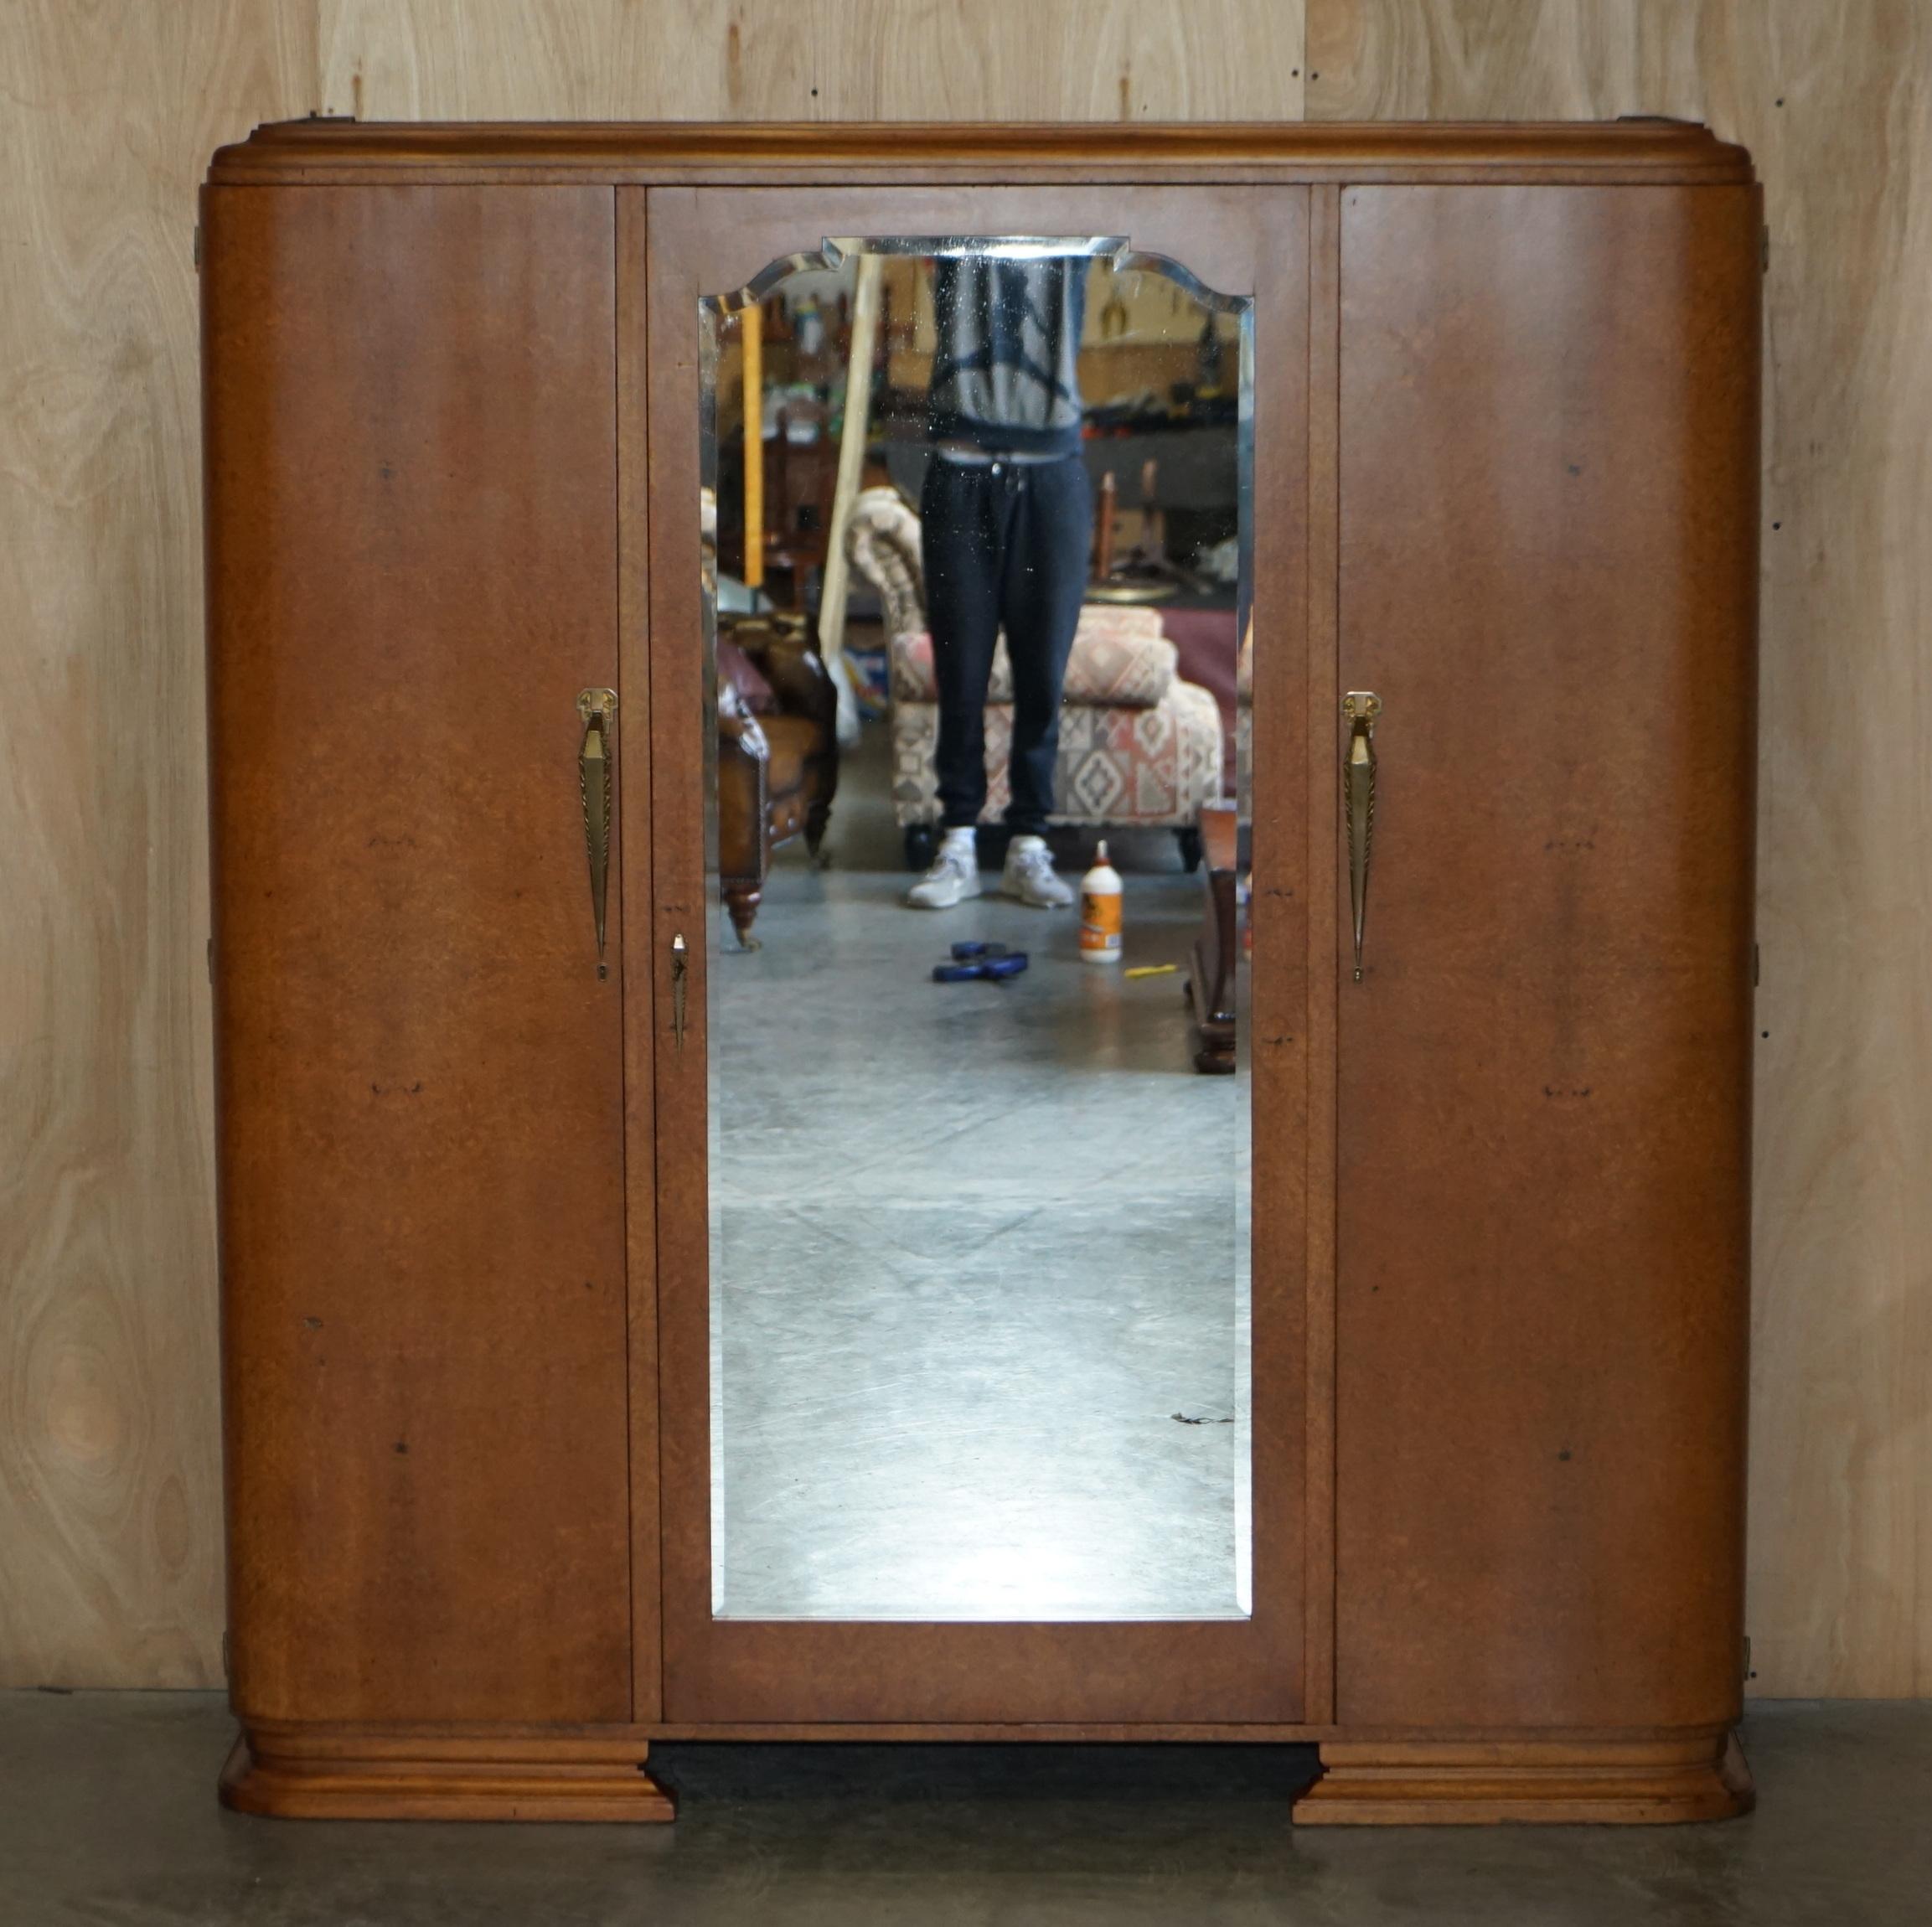 Nous sommes ravis d'offrir à la vente cette superbe armoire Art Déco en loupe d'érable à trois niveaux avec une grande porte centrale en miroir sur toute la longueur, qui fait partie d'une petite suite.

Il s'agit d'une pièce décorative de très